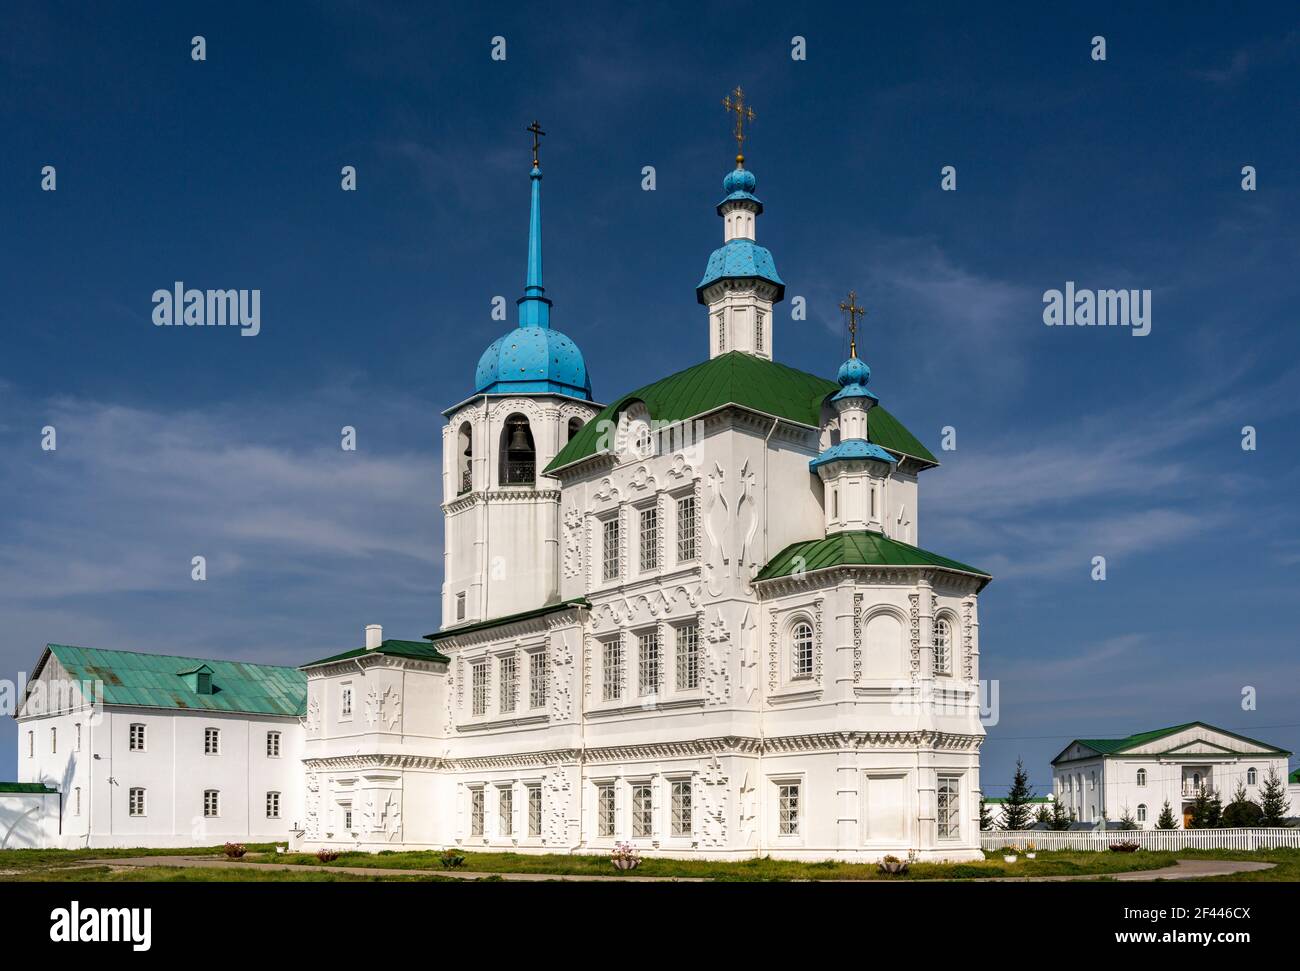 Church of the Spaso-Preobrazhensky Monastery Posolskoye at great Baykal Lake in Russia. Stock Photo